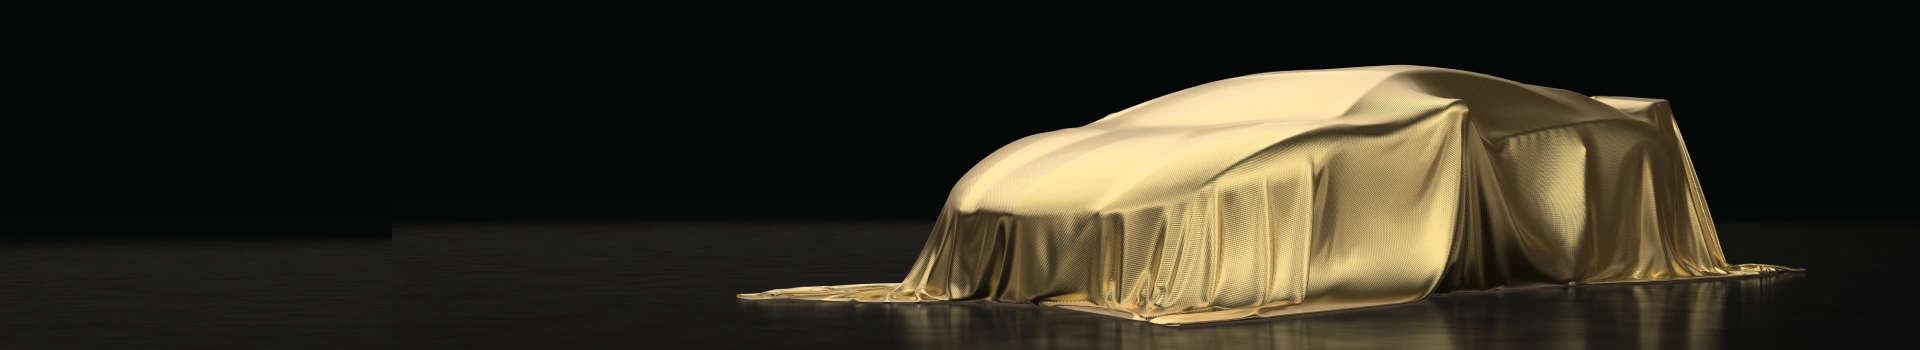 samochód nakryty złotym materiałem